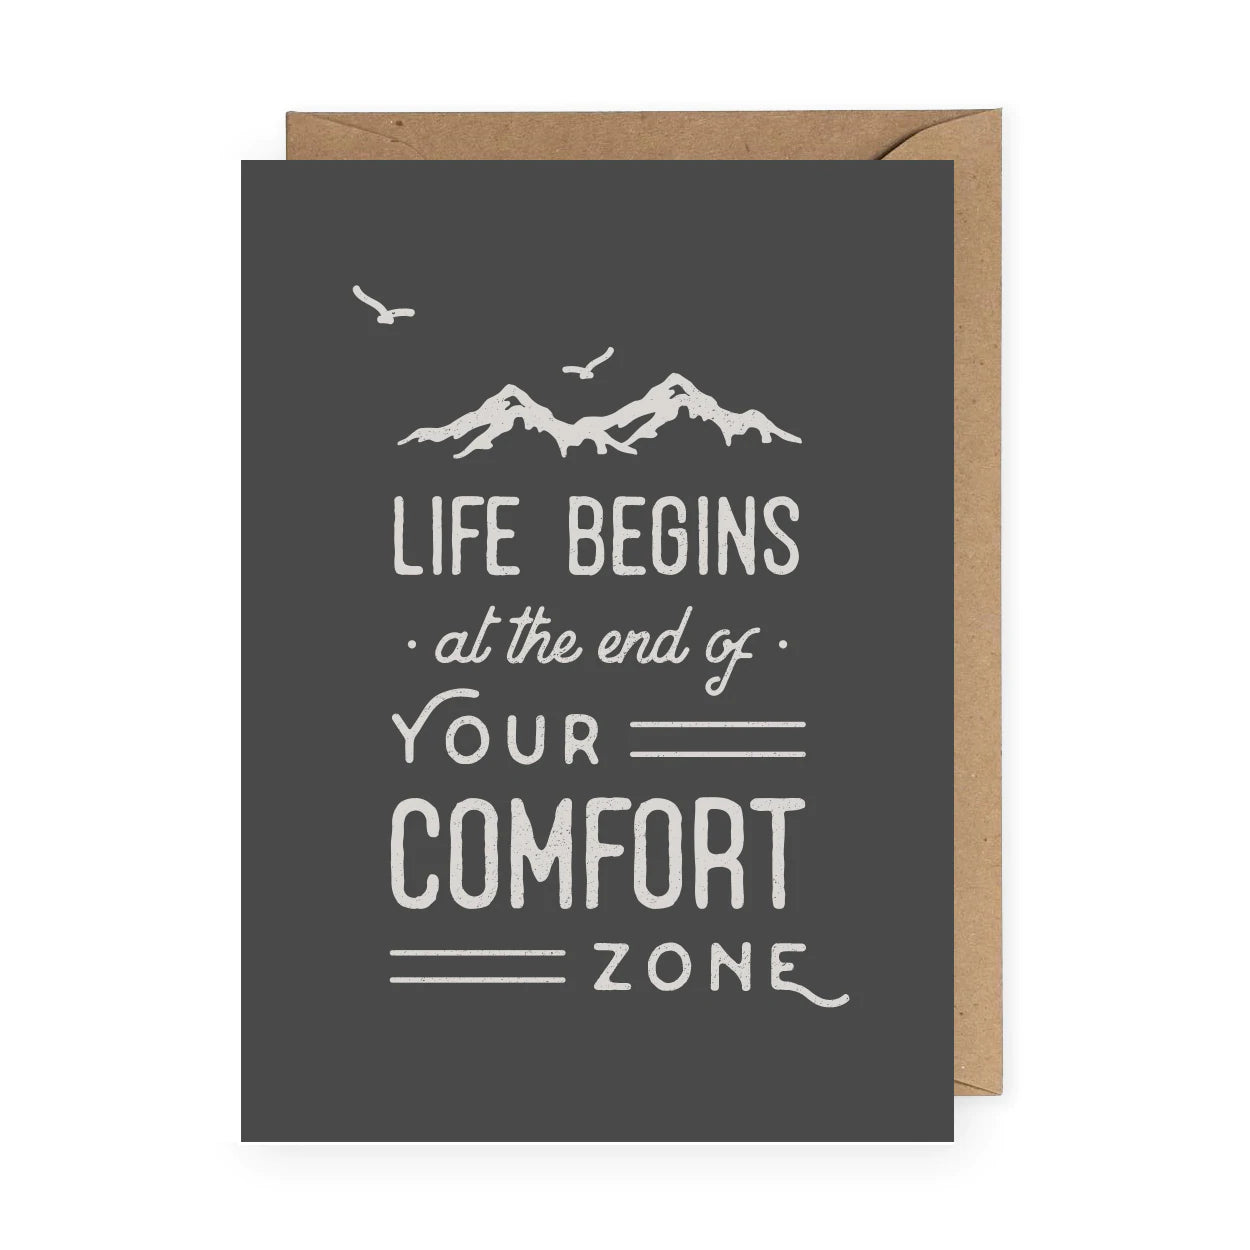 Comfort Zone - Anastasia Co.